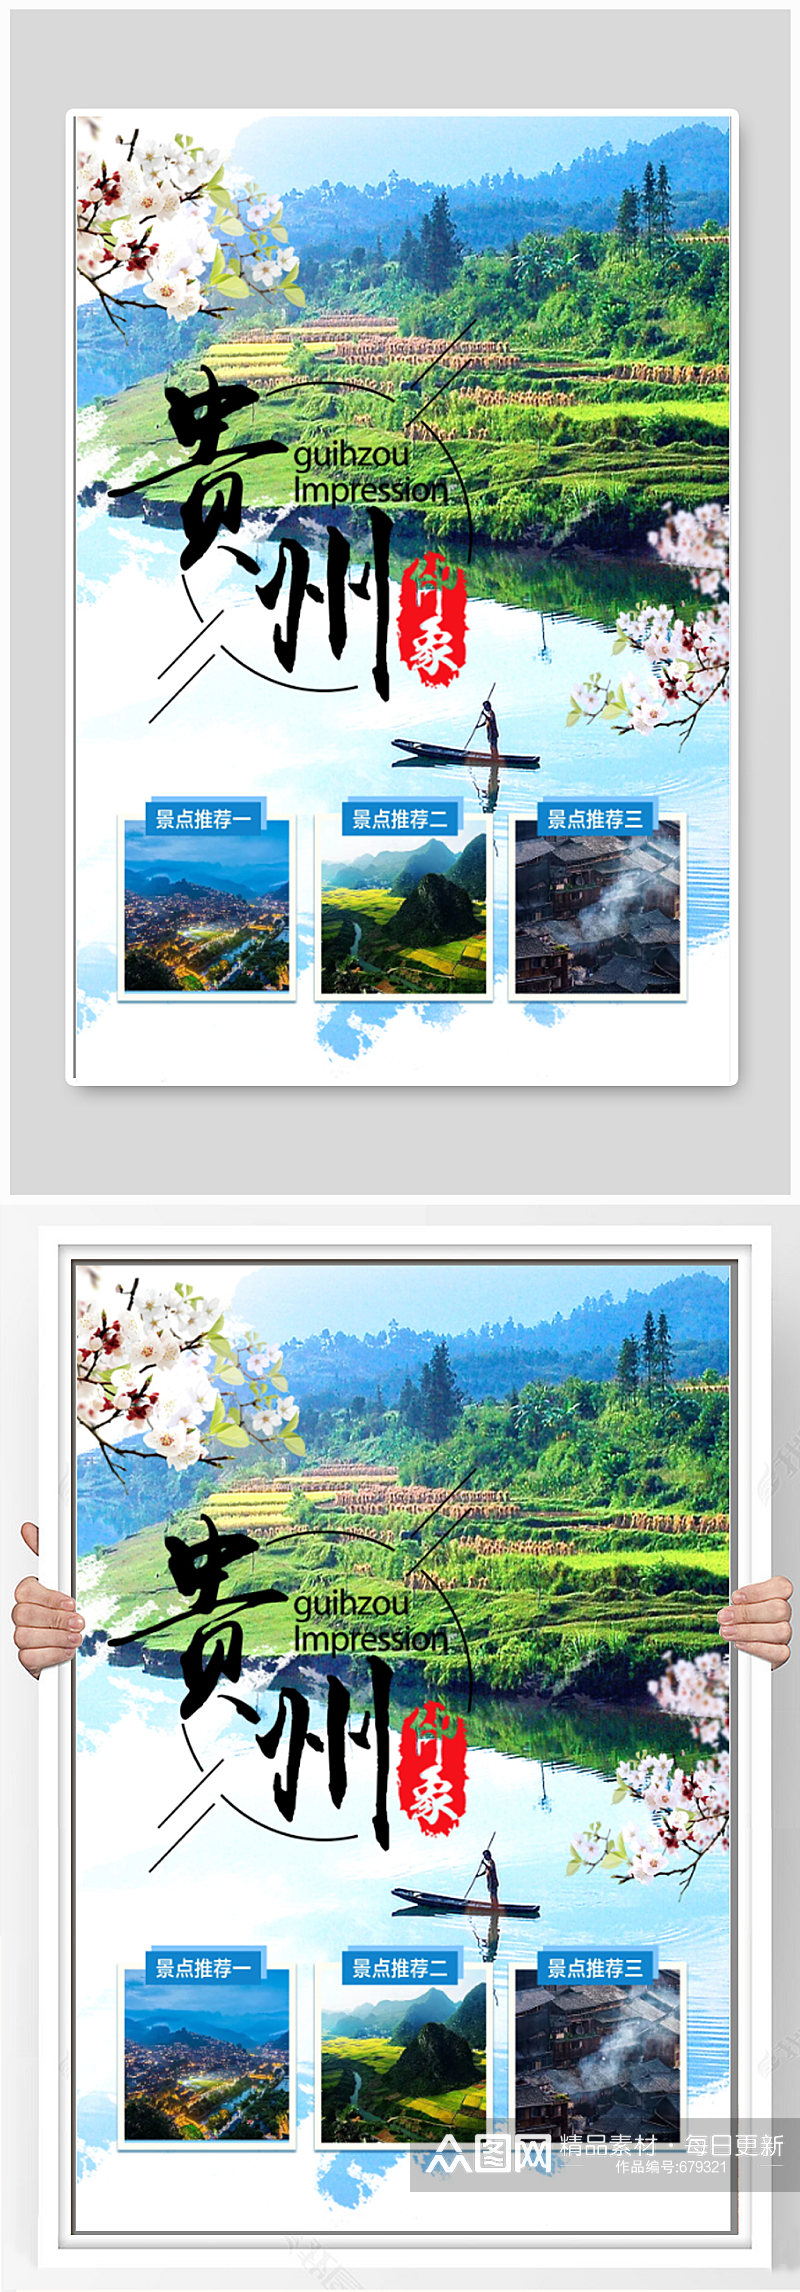 贵州印象之美旅游海报设计素材